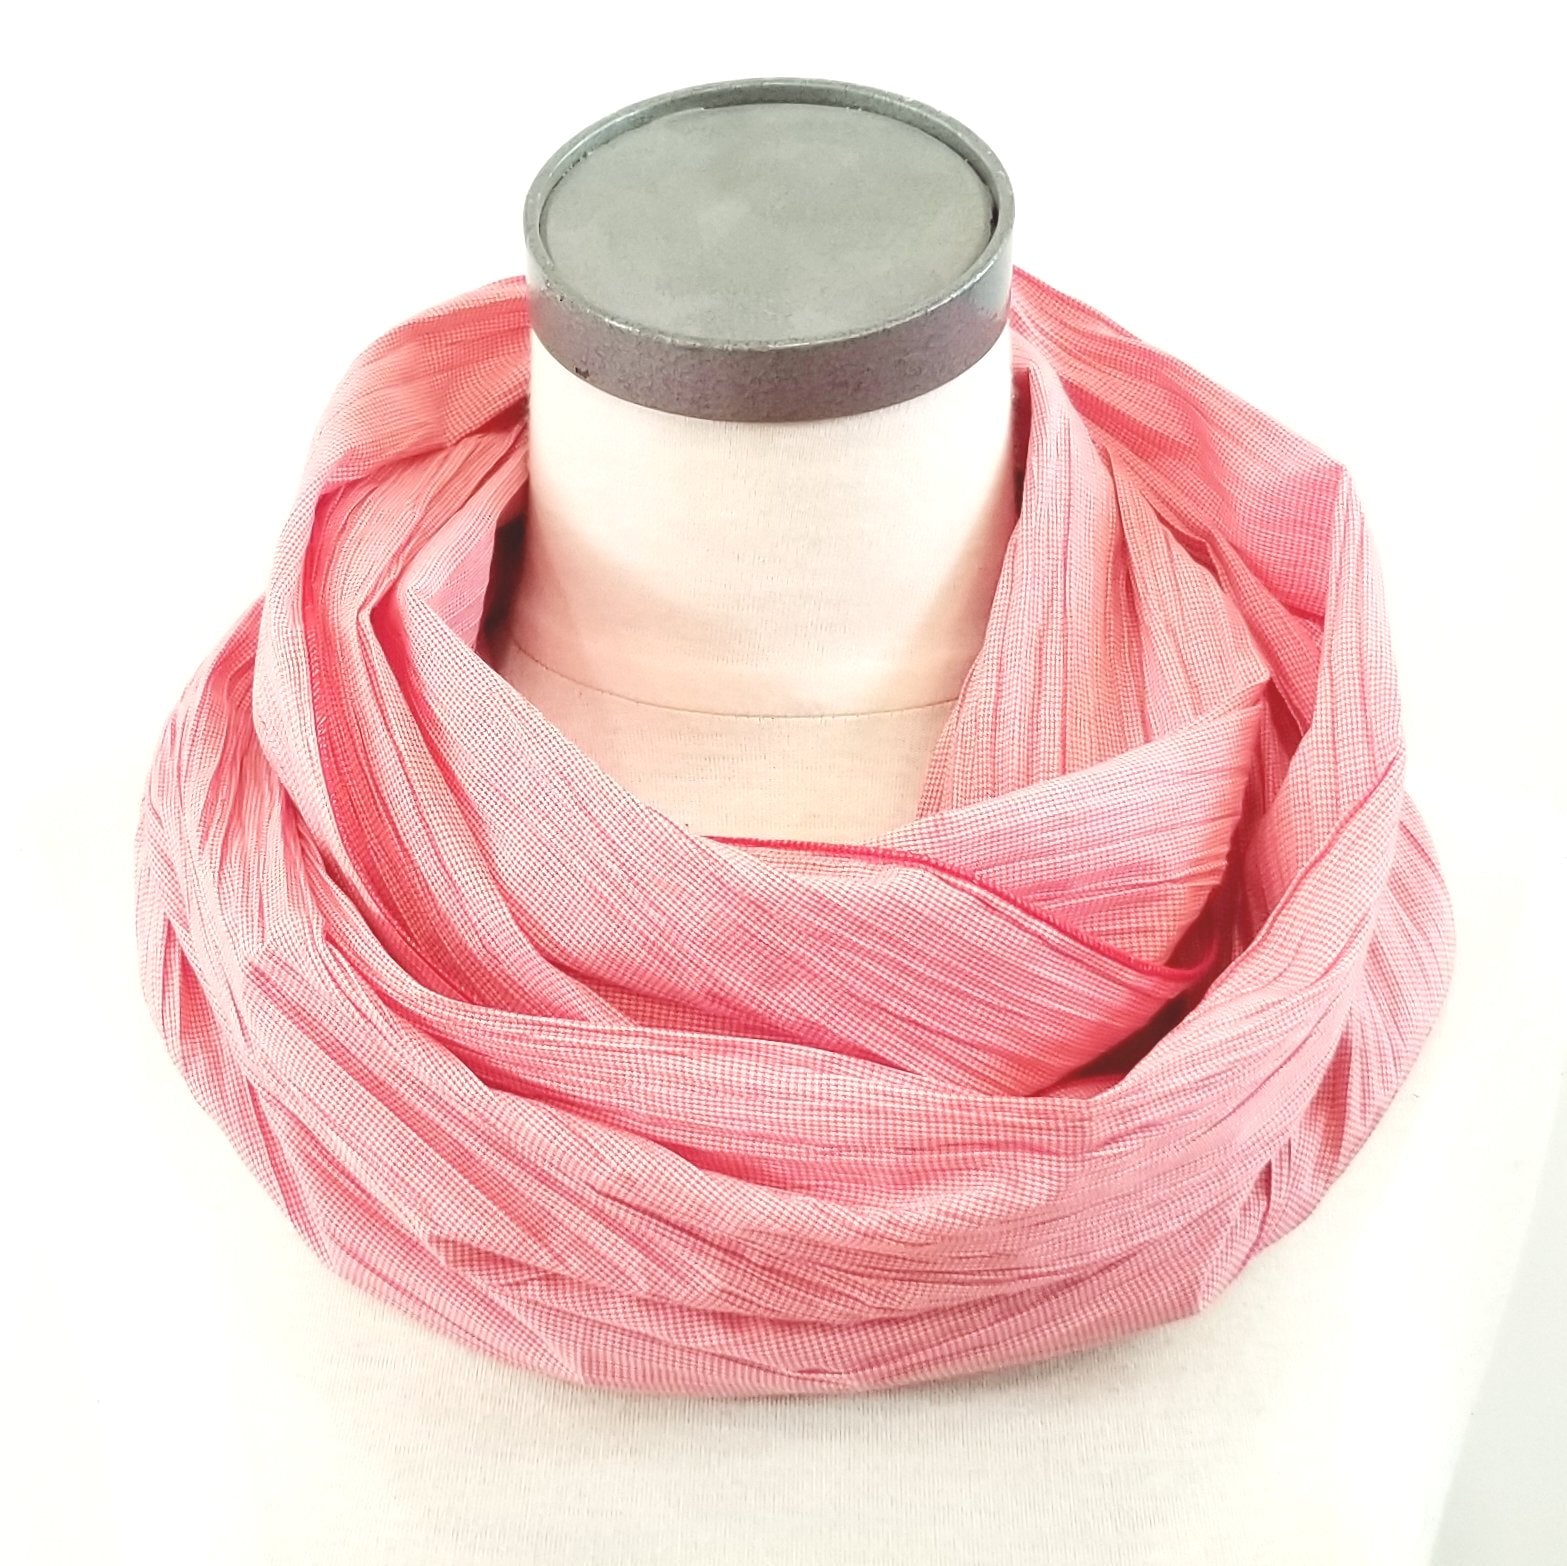 Foulard circulaire en coton/polyester rose froissé